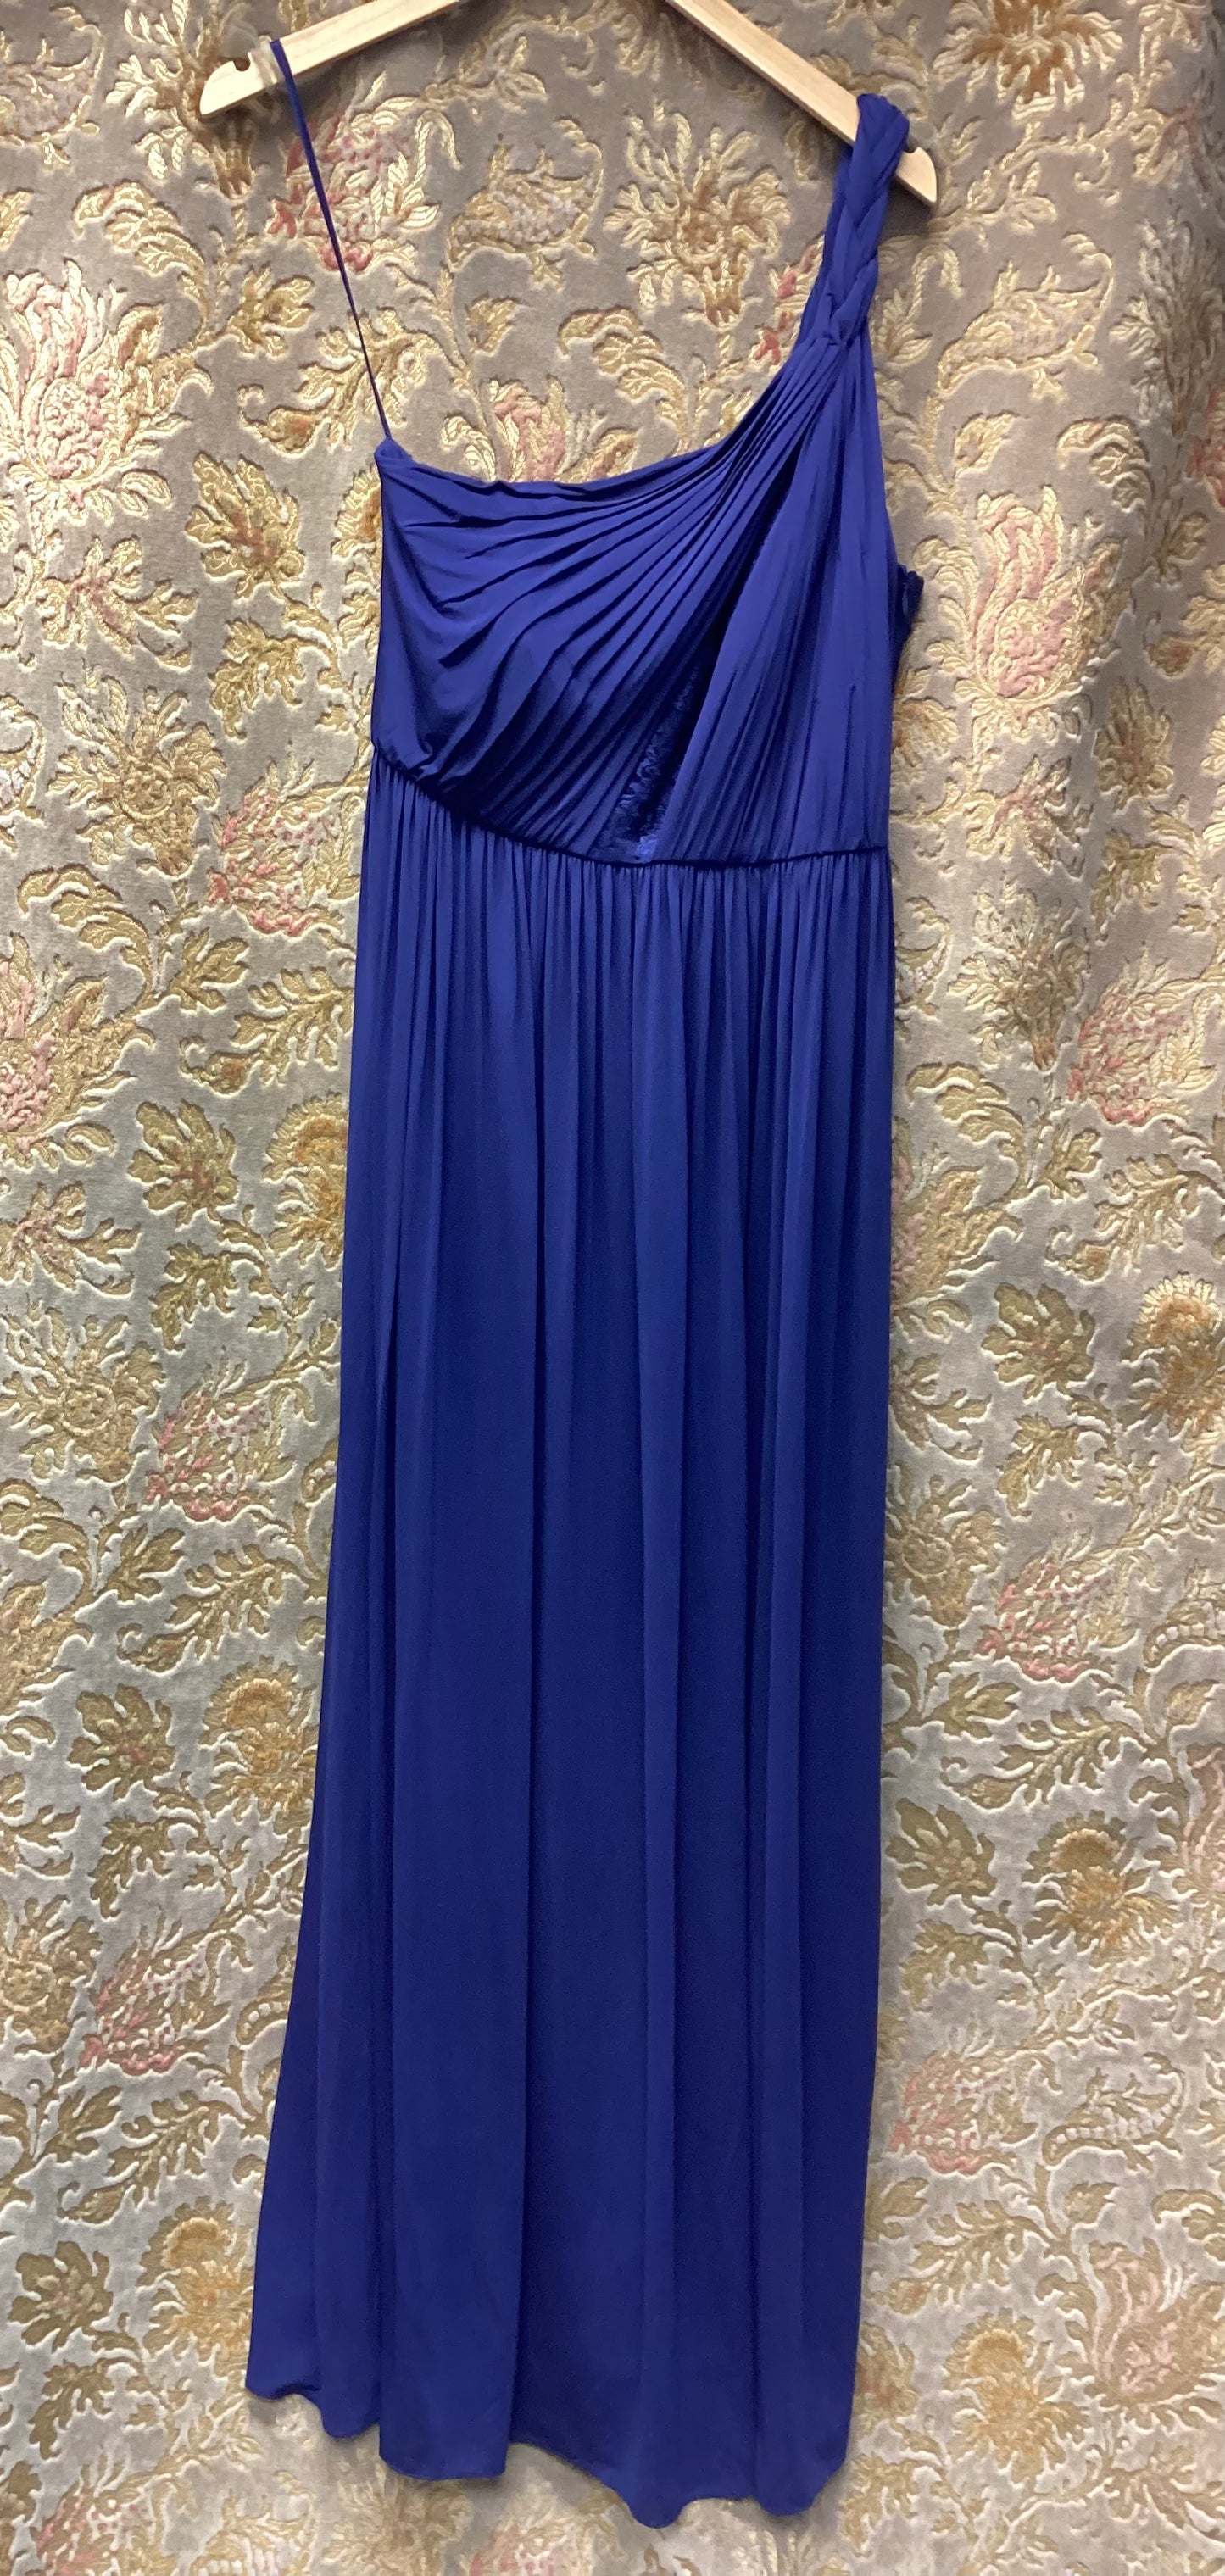 BNWT Coast Navy Blue Maxi Dress Size 12